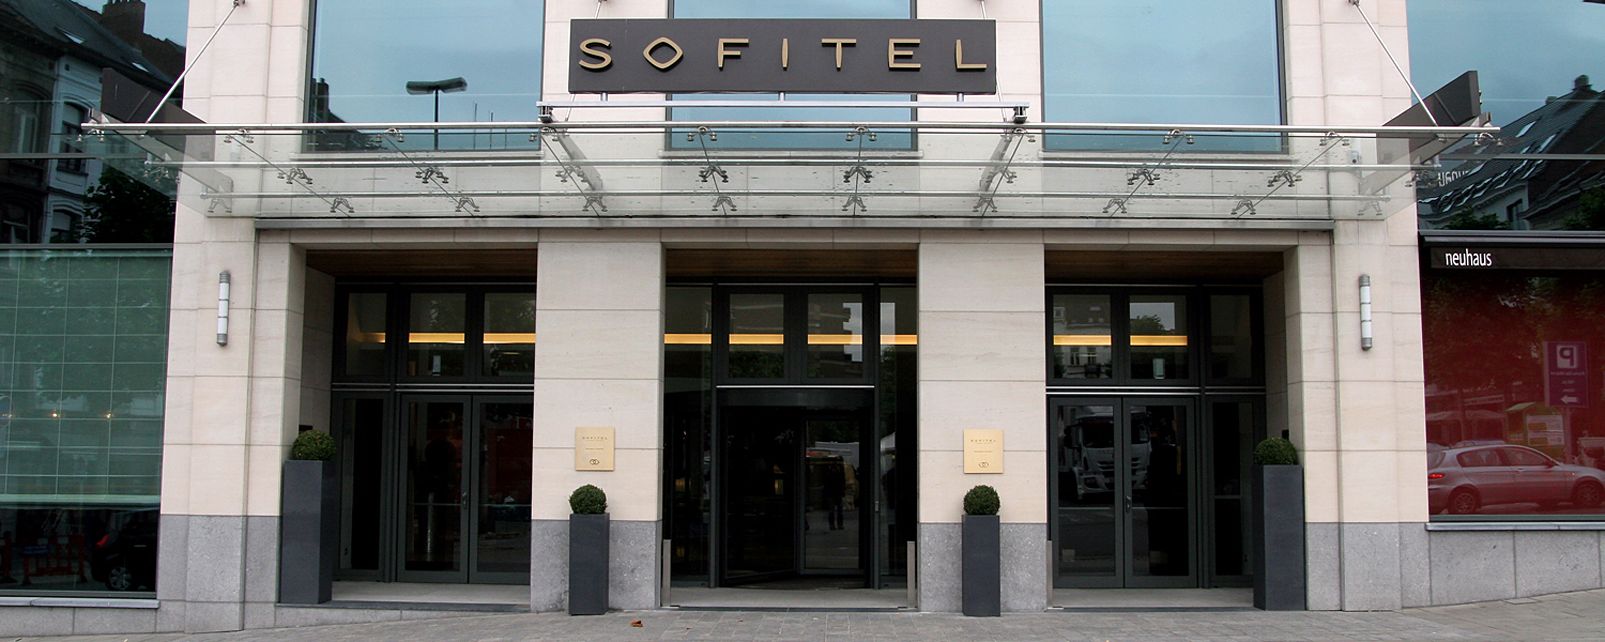 Hotel Sofitel Europe